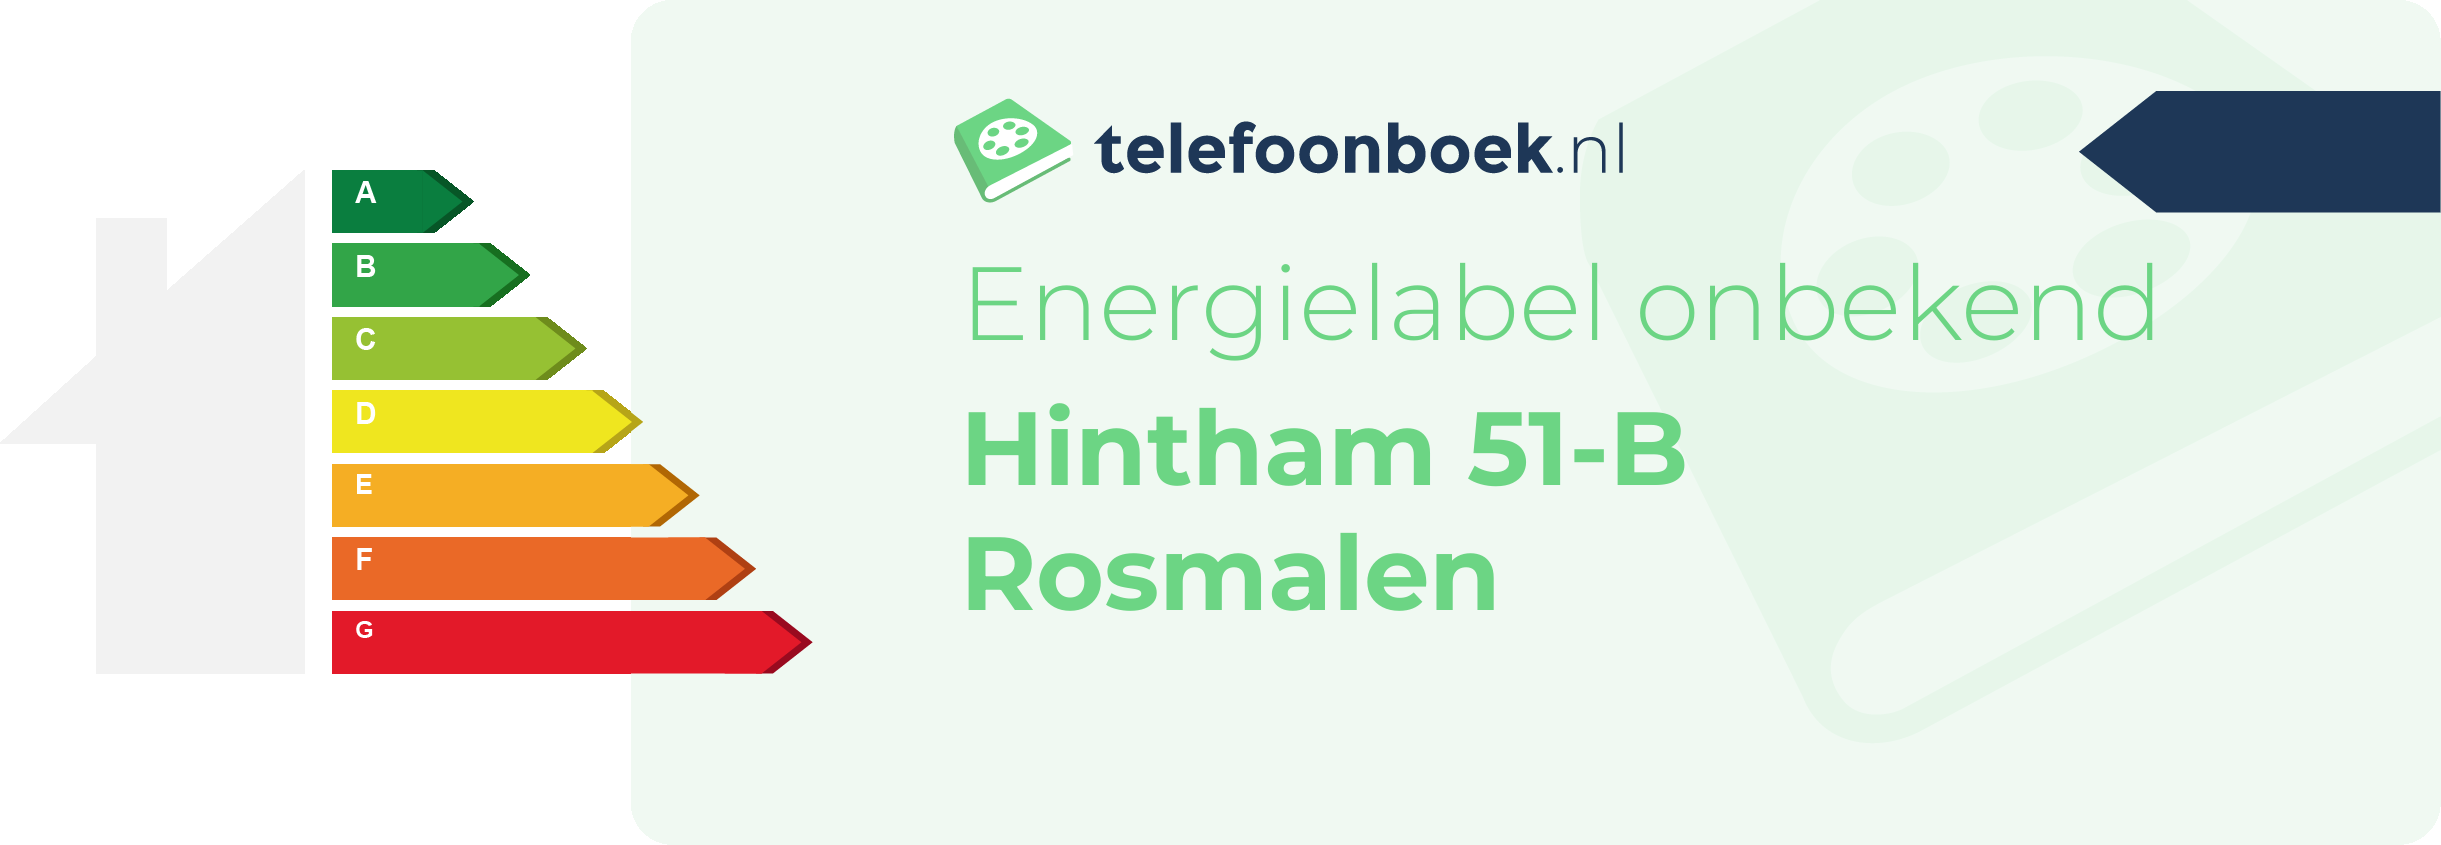 Energielabel Hintham 51-B Rosmalen